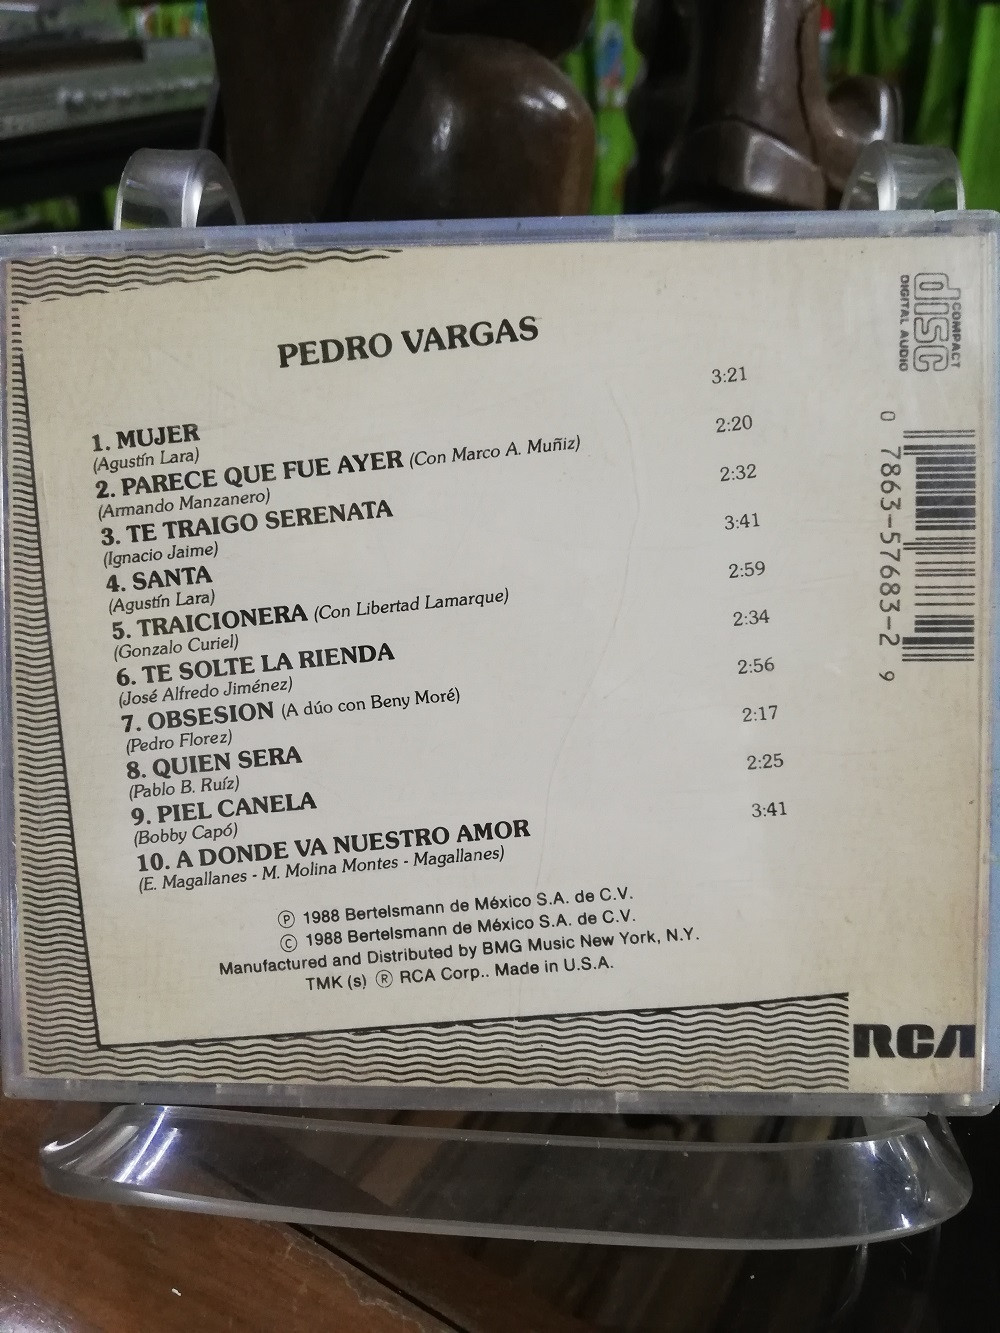 Imagen CD PEDRO VARGAS - PEDRO VARGAS 2